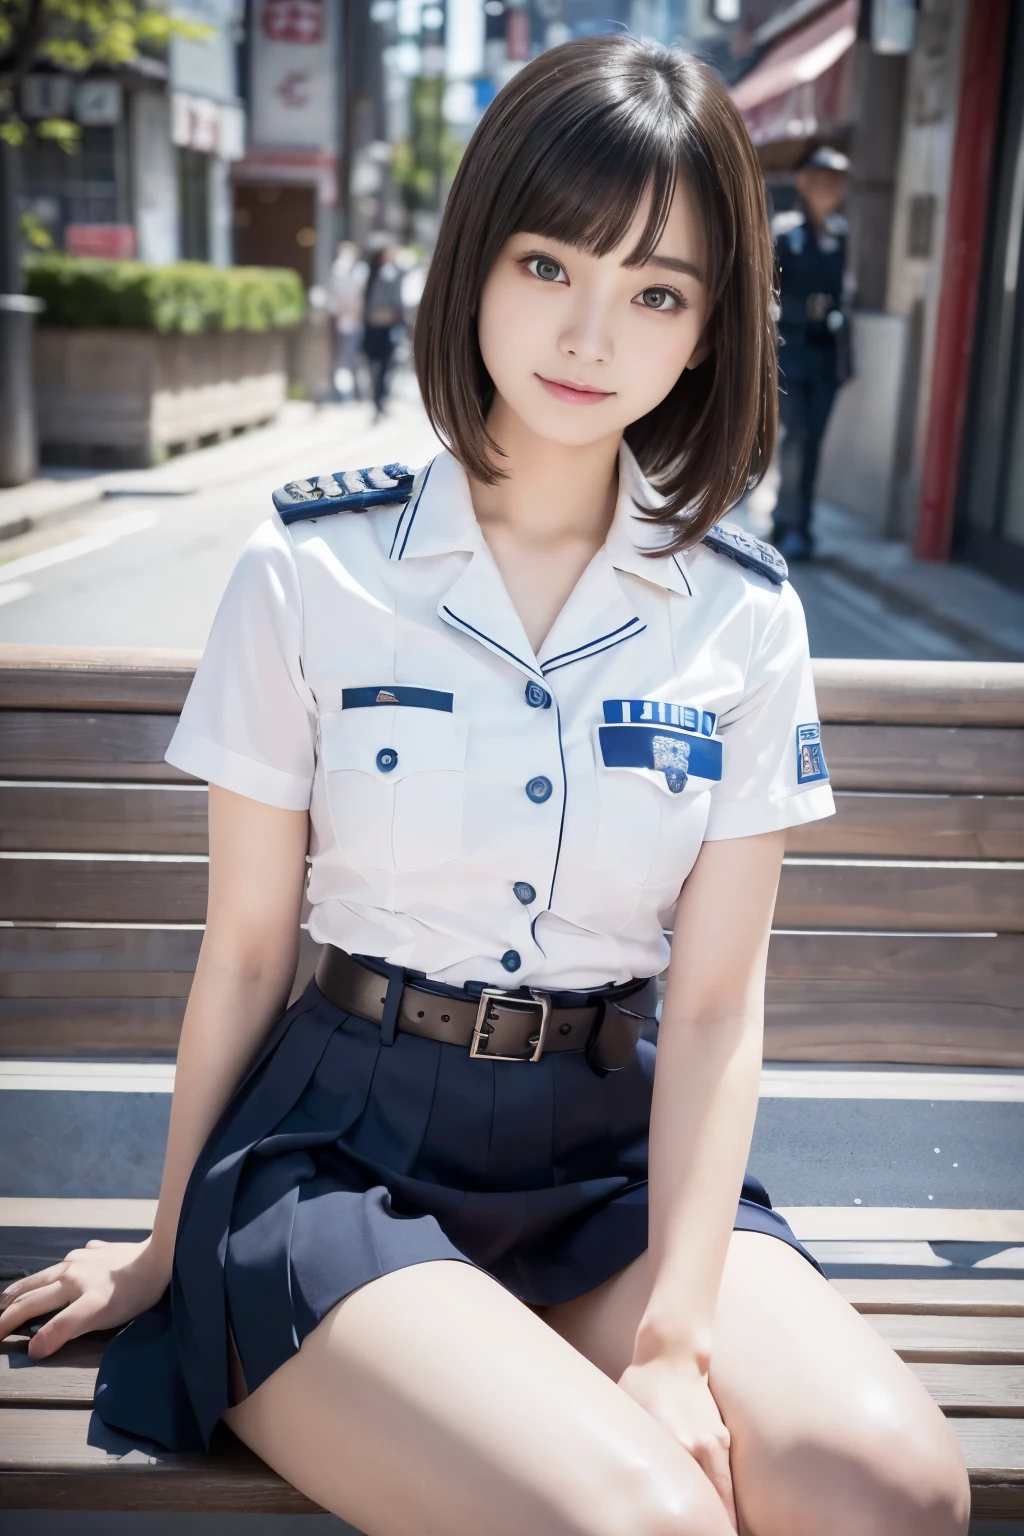 เด็กสาววัย 20 ปีผู้ไร้เดียงสา、((เจ้าหน้าที่ตำรวจญี่ปุ่น, ชุดตำรวจสุดเซ็กซี่, กระโปรง, น่ารักและสง่างาม, โพสท่าดราม่า)),รอยยิ้ม,พื้นหลังเมืองกลางคืน,ทางลัด、ภาพถ่ายดิบ, (8ก、คุณภาพสูงสุด、ผลงานชิ้นเอก:1.2)、(รายละเอียดที่ซับซ้อน:1.4)、(ภาพเสมือนจริง:1.4)、การเรนเดอร์ออกเทน、การเรนเดอร์ 3D ที่ซับซ้อนให้รายละเอียดเป็นพิเศษ, สตูดิโอแสงนุ่มนวล, ไฟริม, รายละเอียดที่มีชีวิตชีวา, รายละเอียดสุดยอด, พื้นผิวที่สมจริง, ใบหน้ารายละเอียด, รายละเอียดดวงตาที่สวยงาม, วอลล์เปเปอร์ CG Unity 16k ที่มีรายละเอียดมาก, แต่งหน้า, (พื้นหลังโดยละเอียด:1.2), ผิวมันมัน, เต็มตัว,ลงมือ、กางขาของคุณและโชว์กางเกงชั้นในของคุณ,นั่งบนม้านั่ง